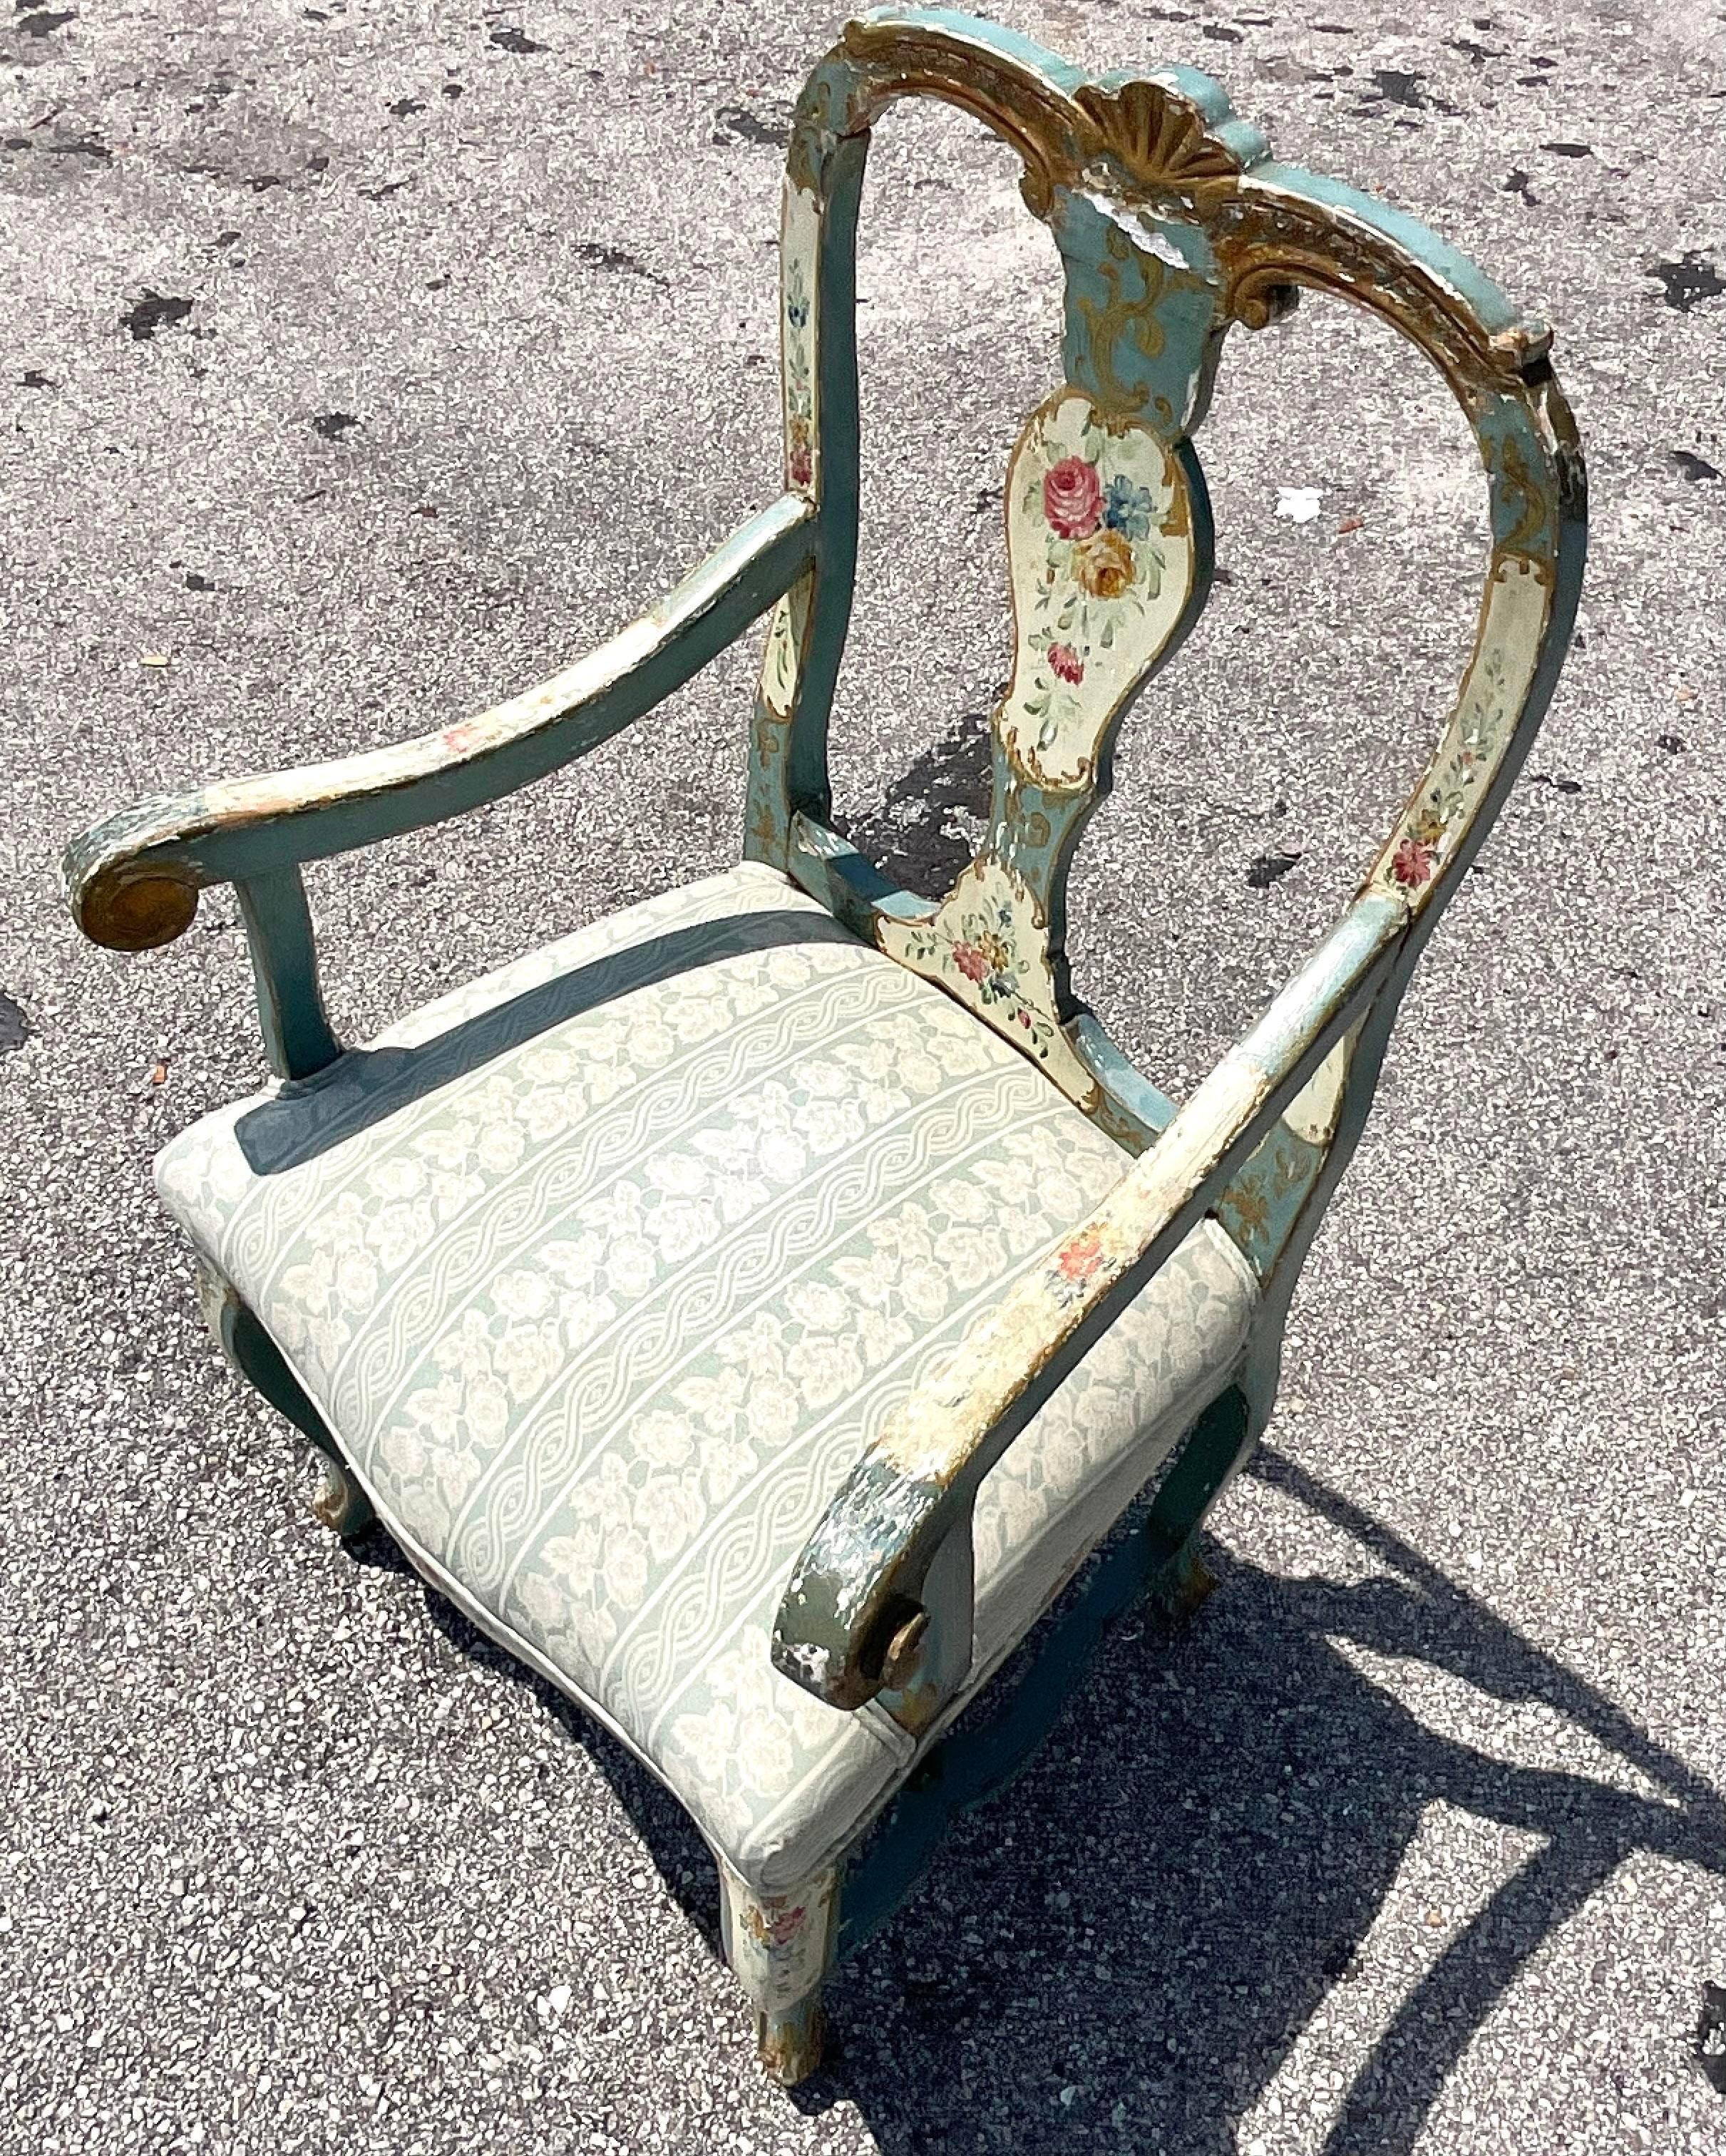 Ein fabelhafter Boho-Sessel im Vintage-Stil. Ein schickes italienisches, handgemaltes Blumendesign. Die Patina, die im Laufe der Zeit entstanden ist, verleiht ihm ein romantisches Aussehen. Passende Stücke sind auch auf meiner Chairish-Seite